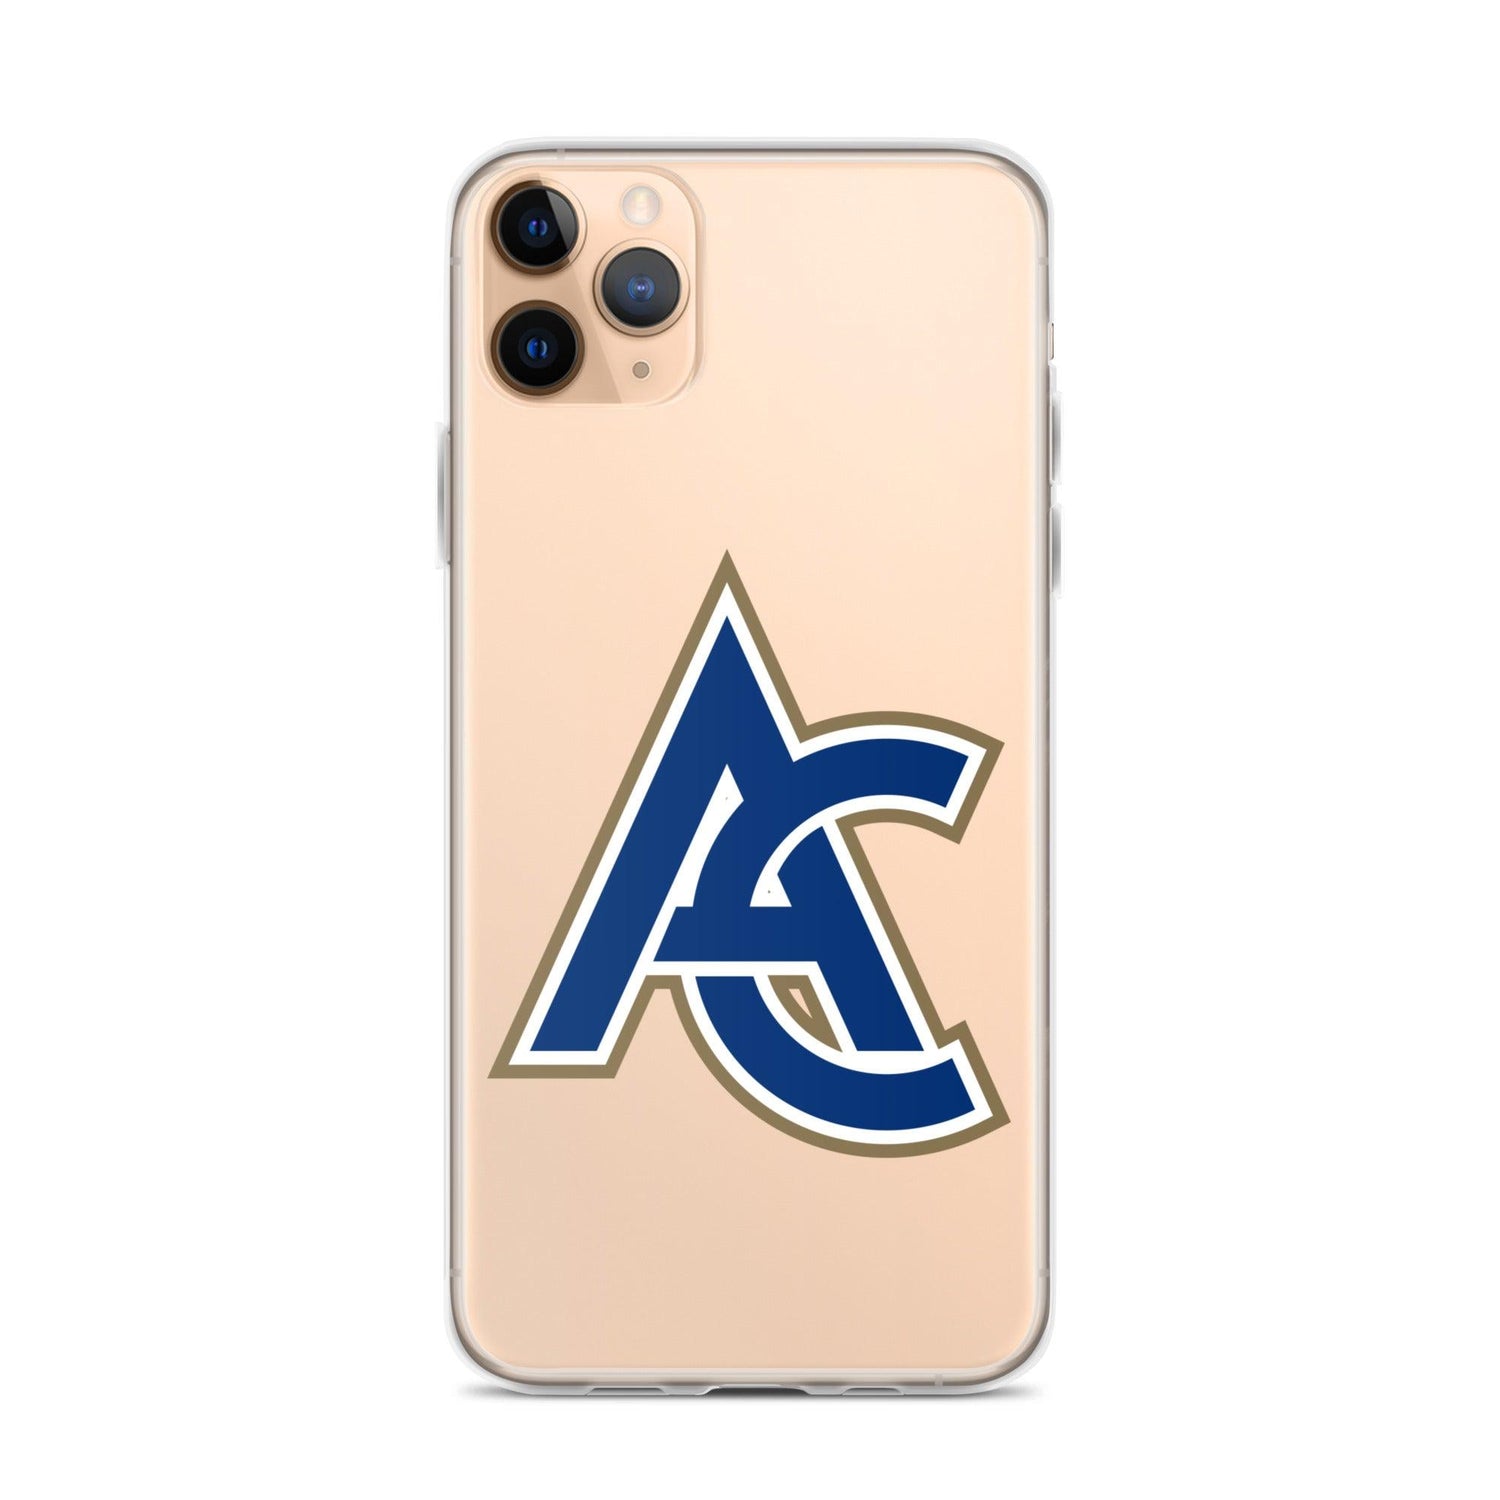 Austin Cox "Elite" iPhone Case - Fan Arch